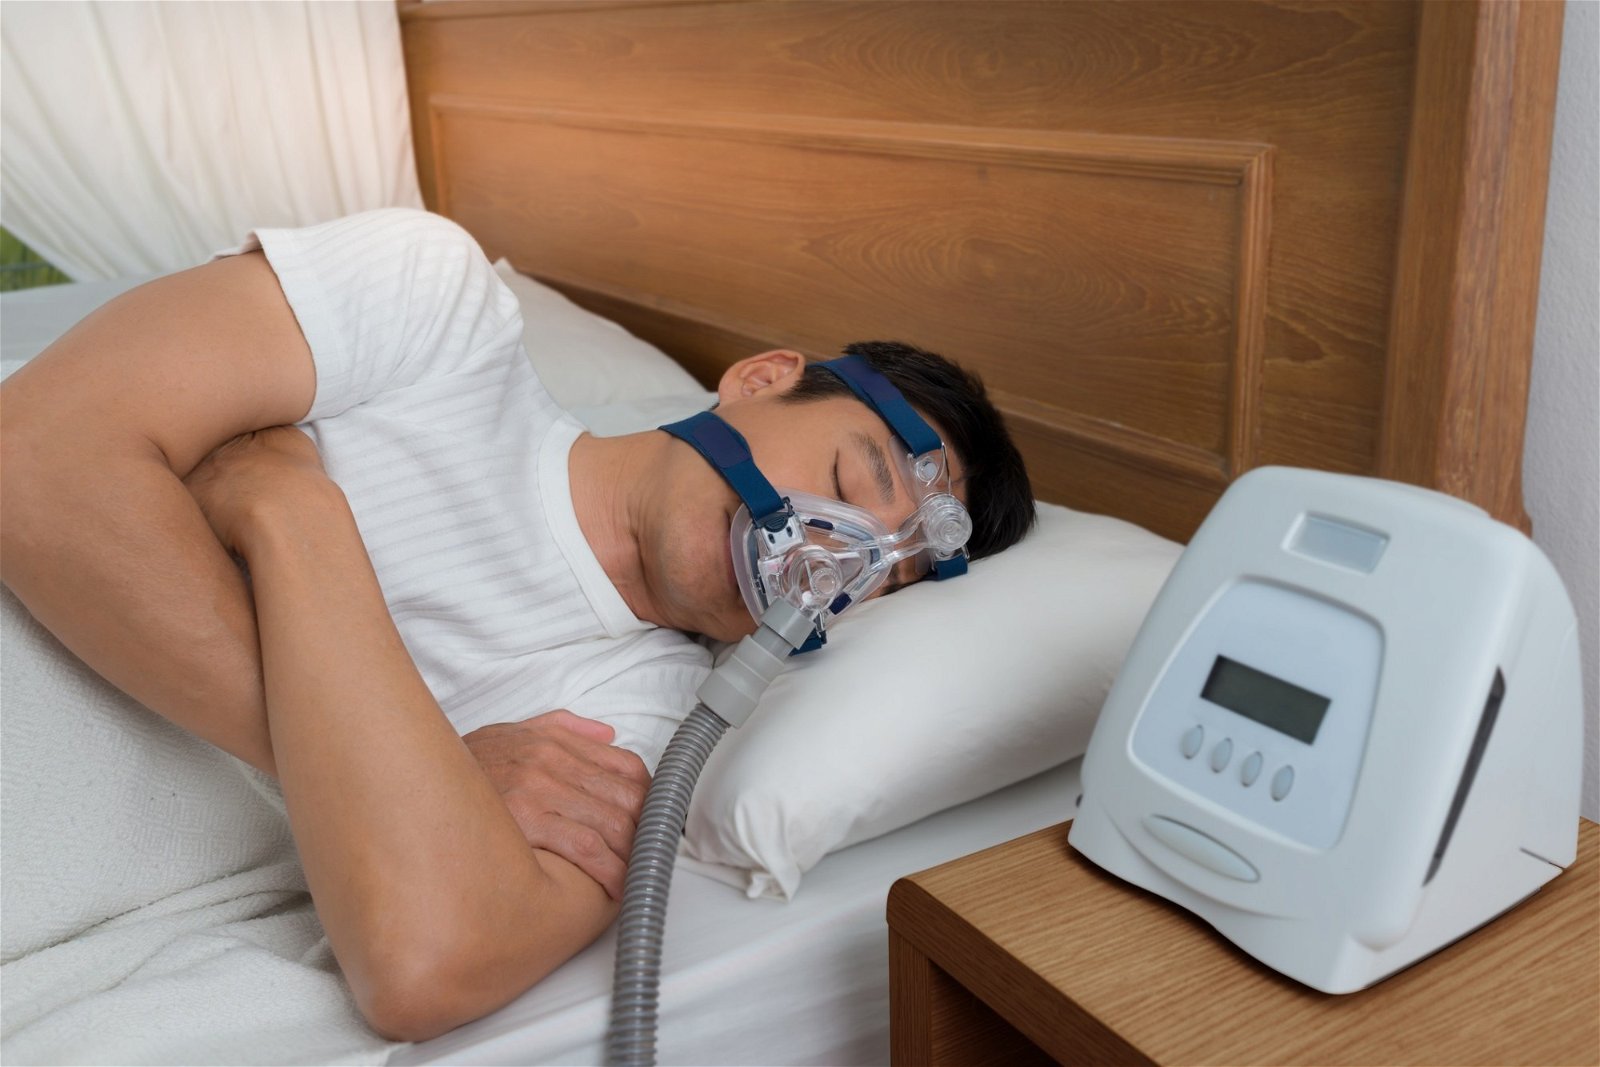 如果有需要，国人可使用自身的公积金第二户口存款（ 医药提款）来支付使用持续性正气压睡眠呼吸器的费用。